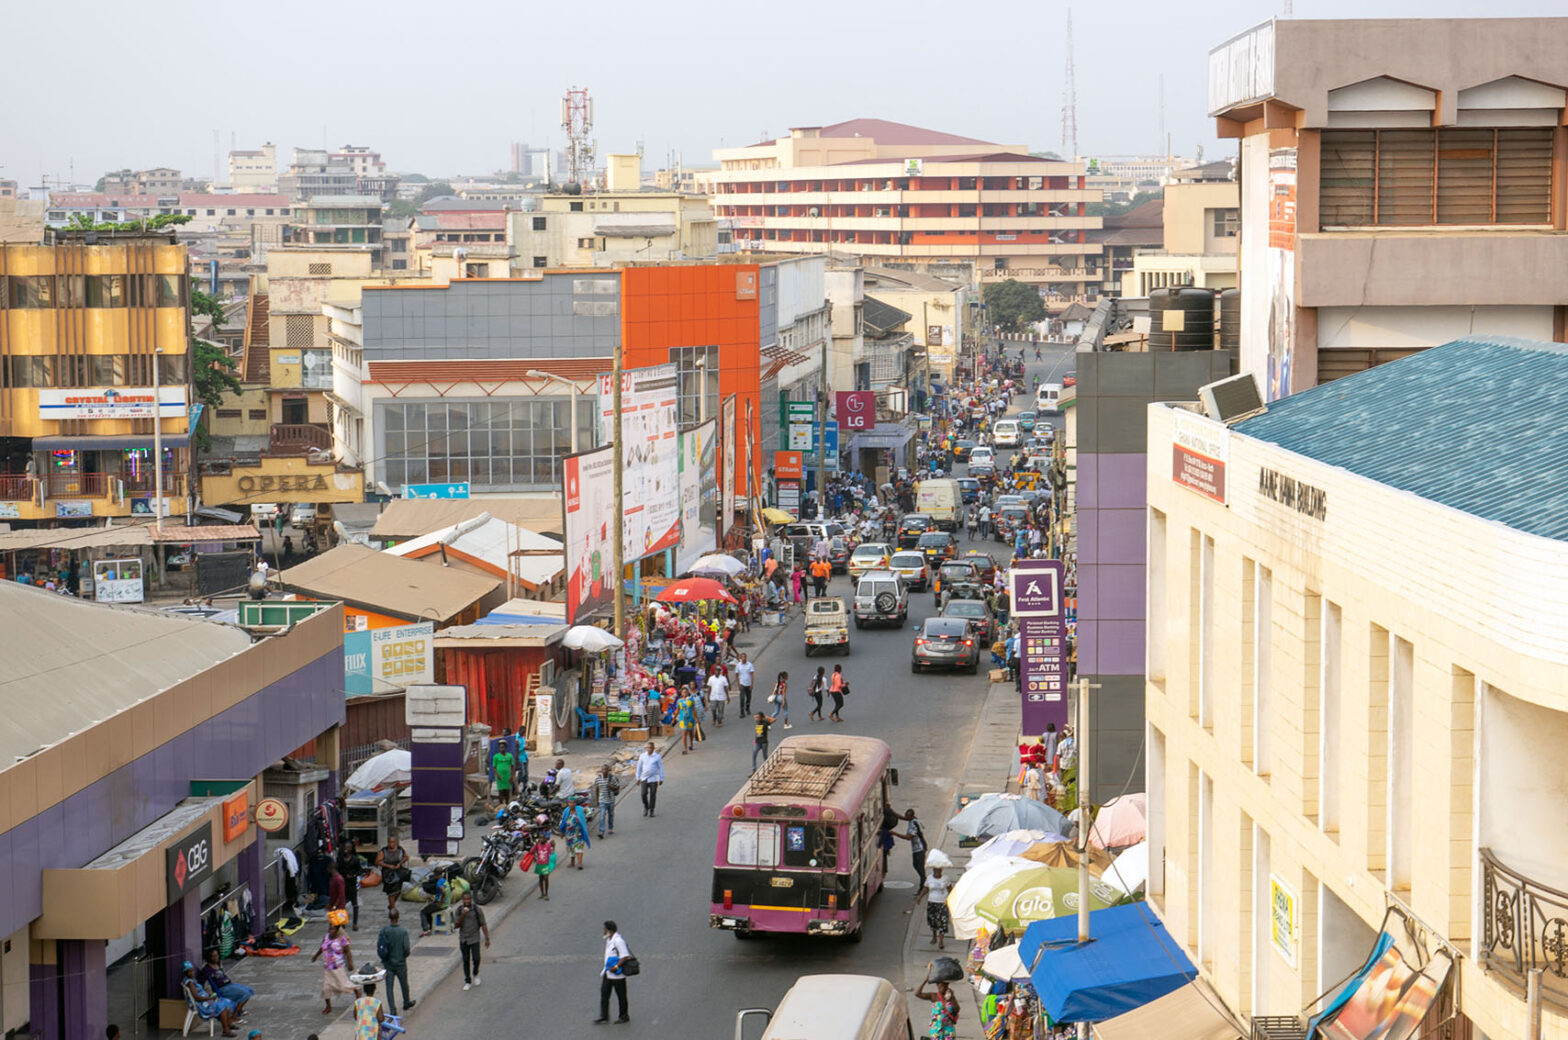 Busy Street in Accra, Ghana